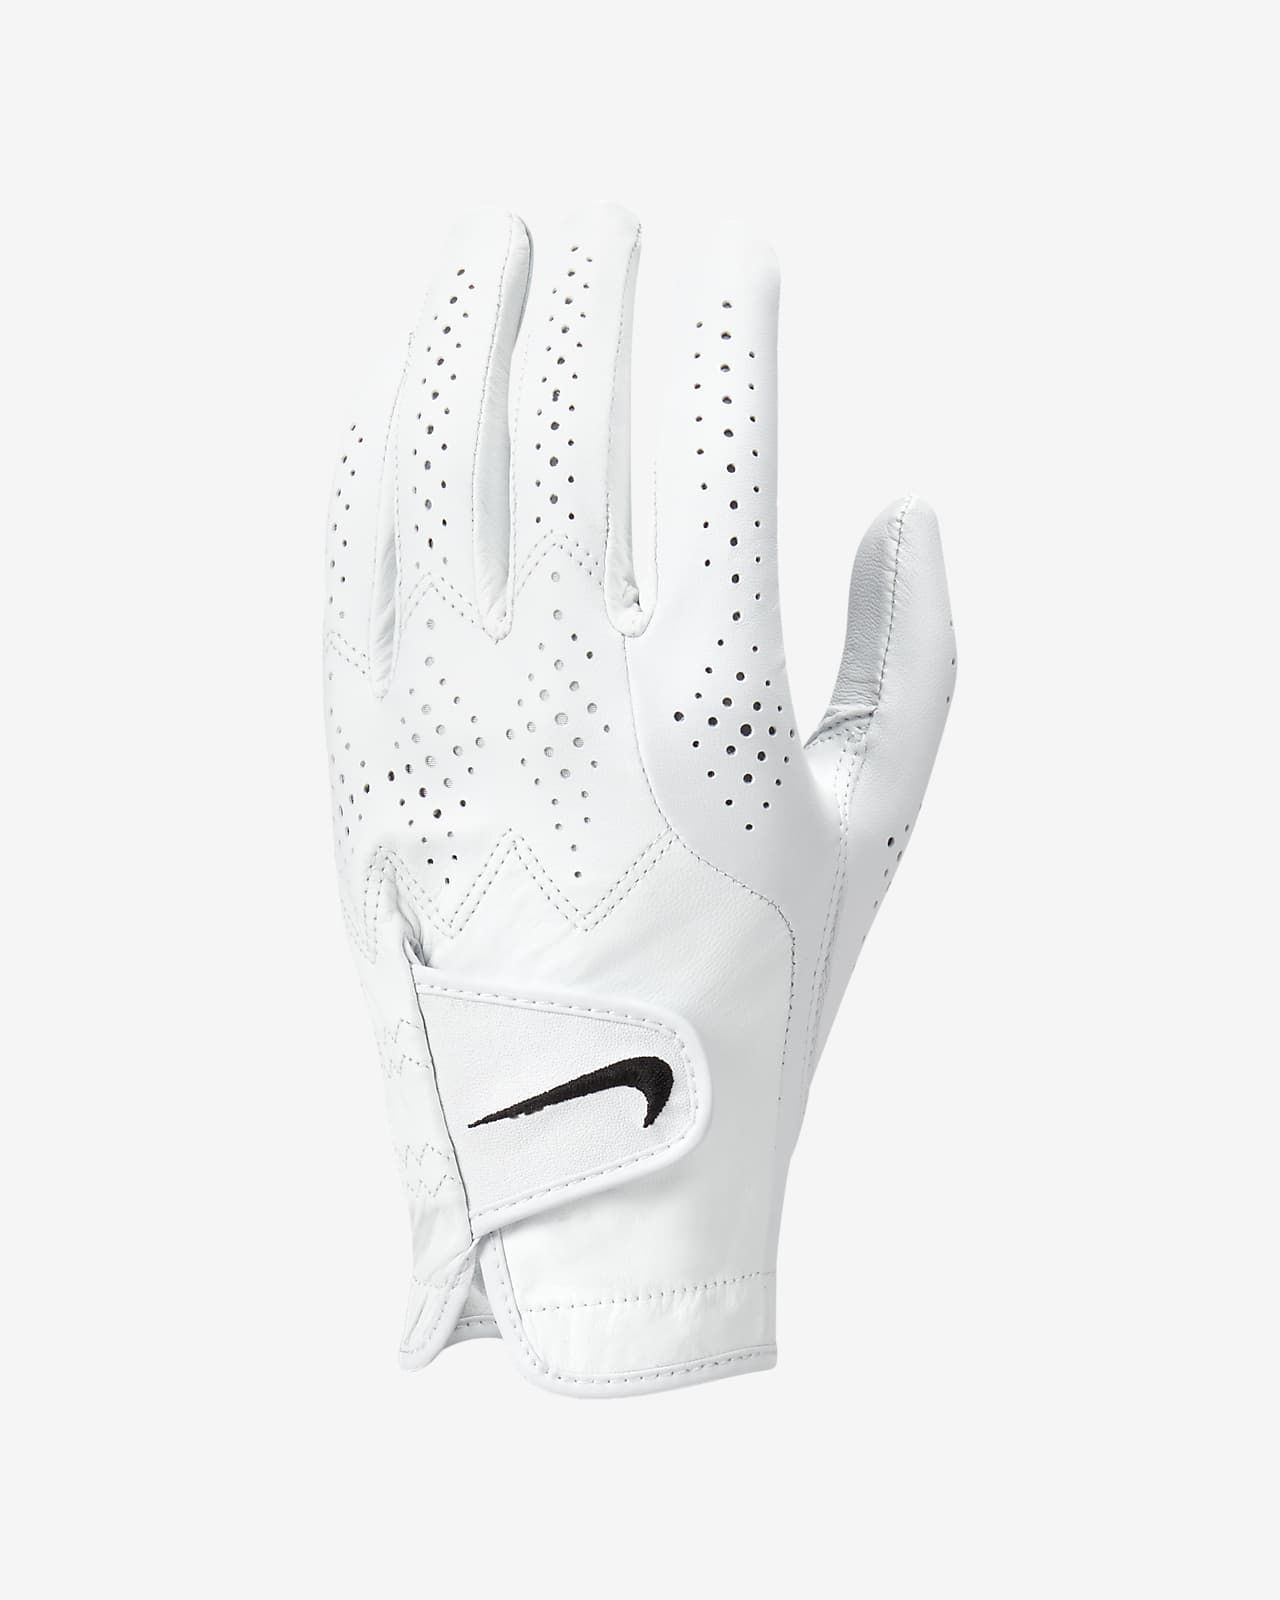 Ανδρικό γάντι γκολφ Nike Tour Classic 4 (αριστερό/κανονικό)